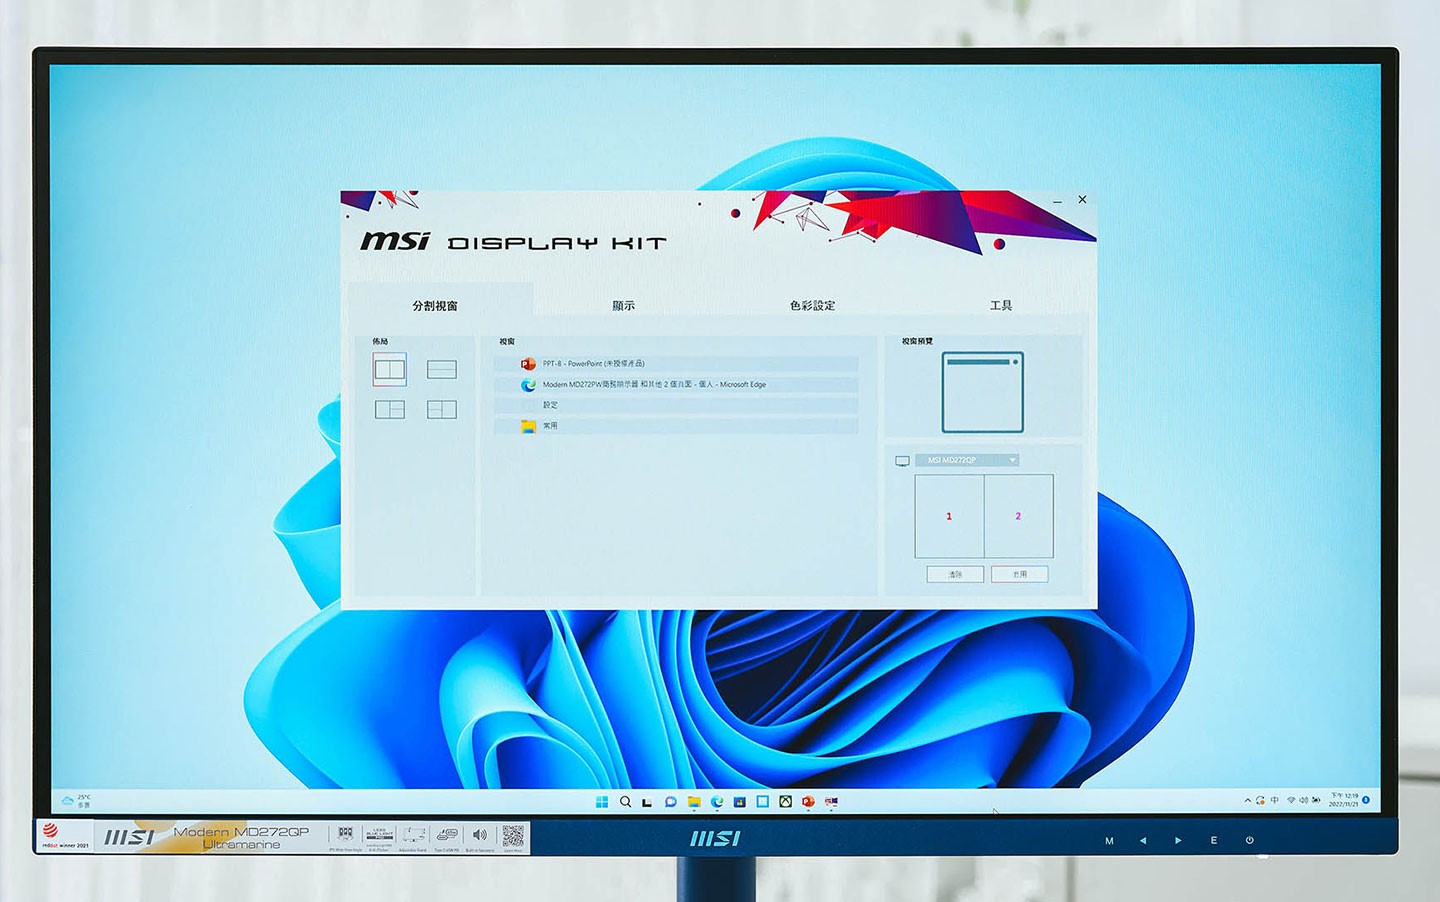 可支援 MSI Display Kit 工具帶來更多功能。